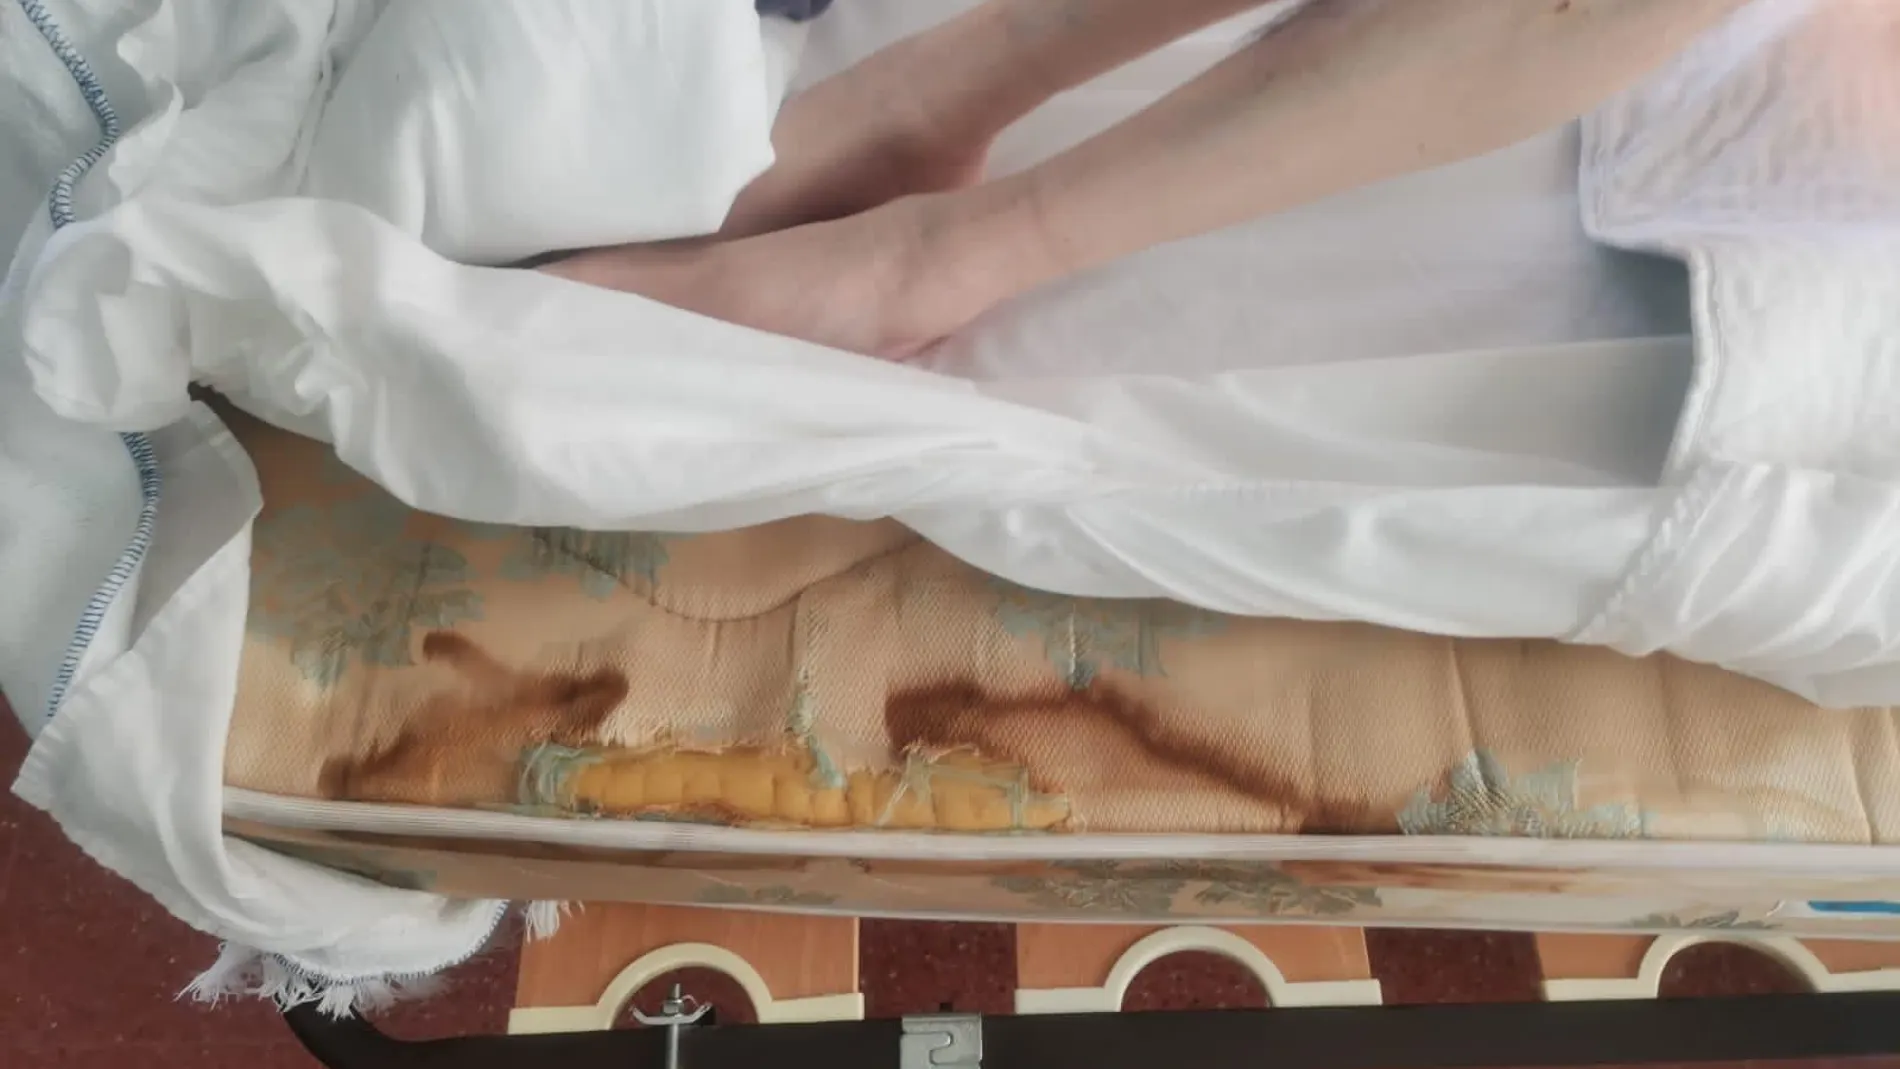 Imagen de la cama de una residente, en condiciones lamentables